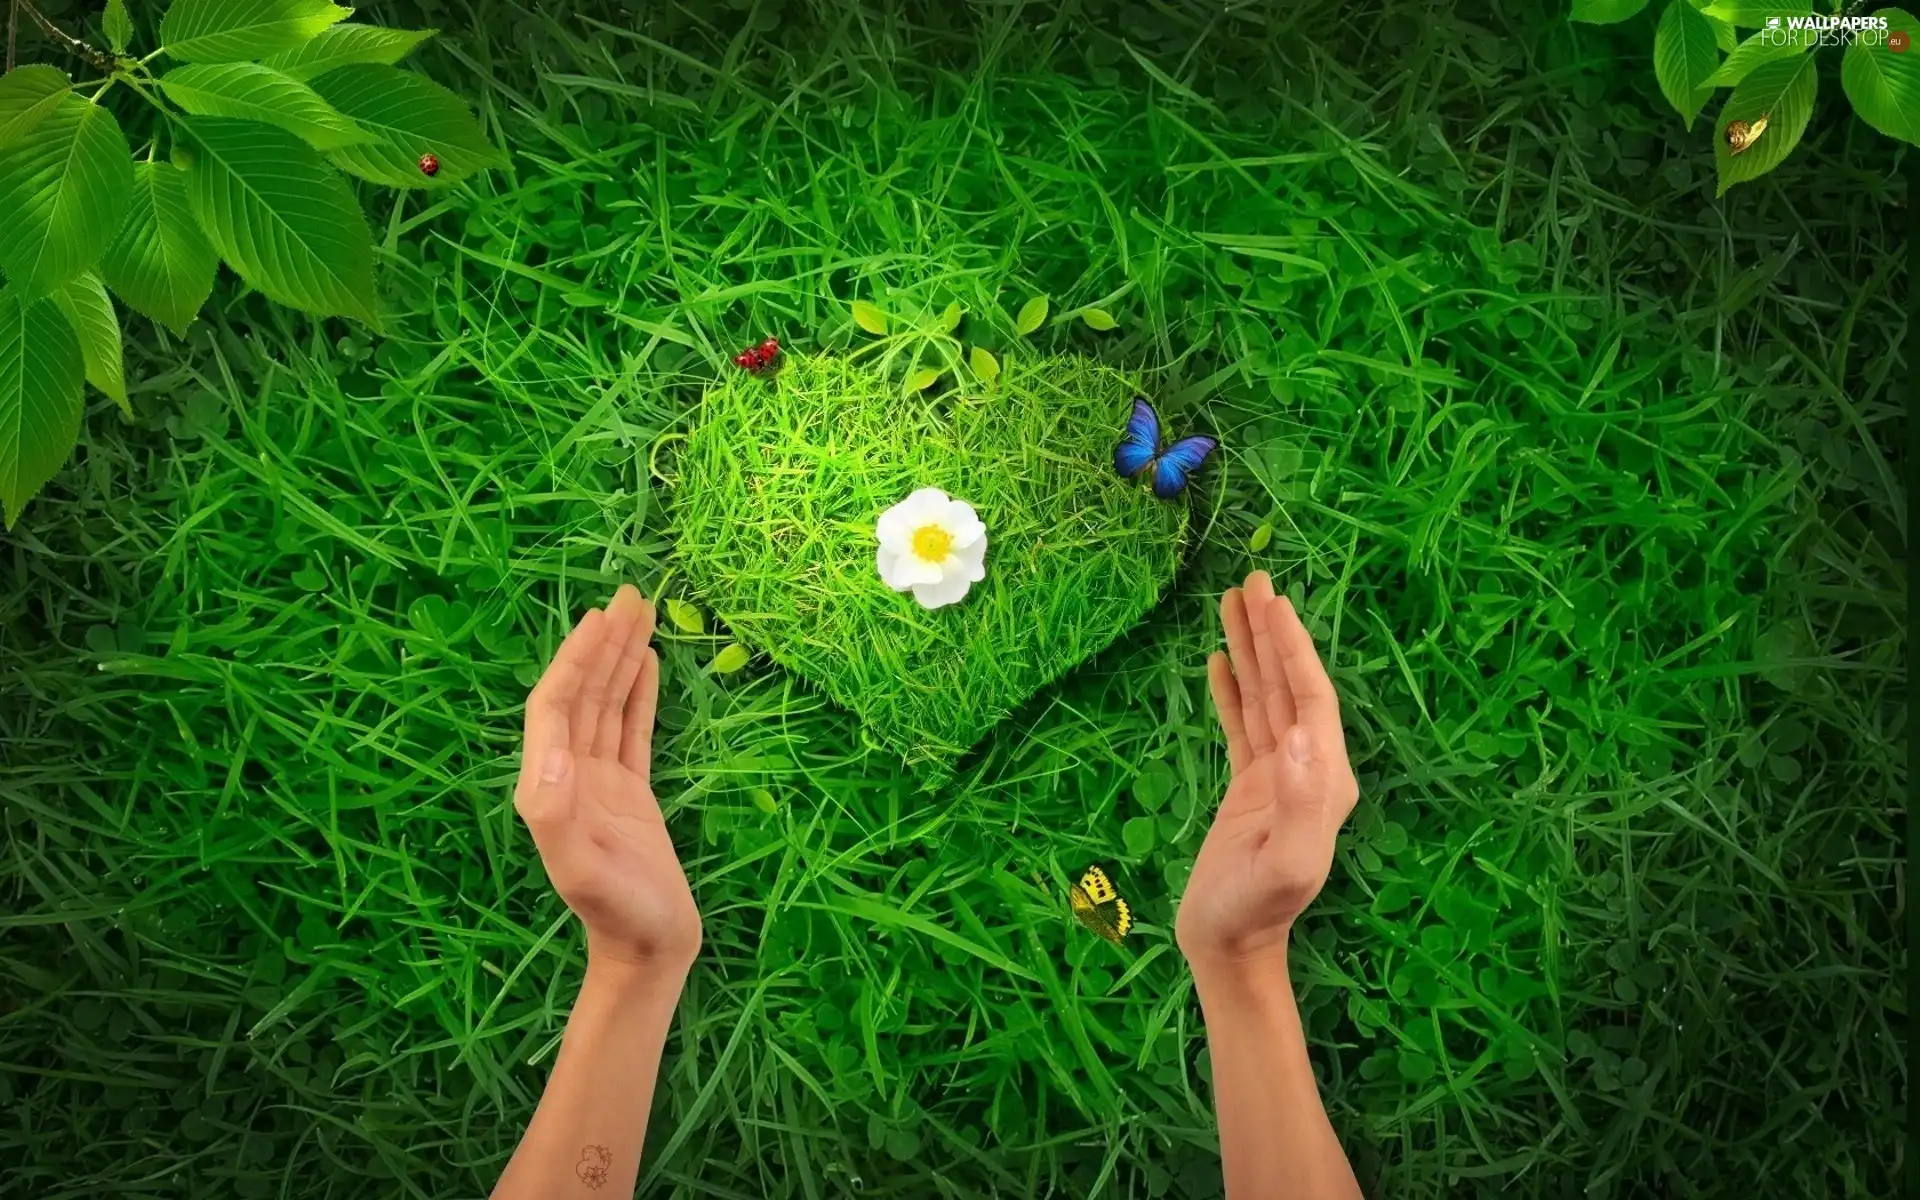 Heart, grass, hands